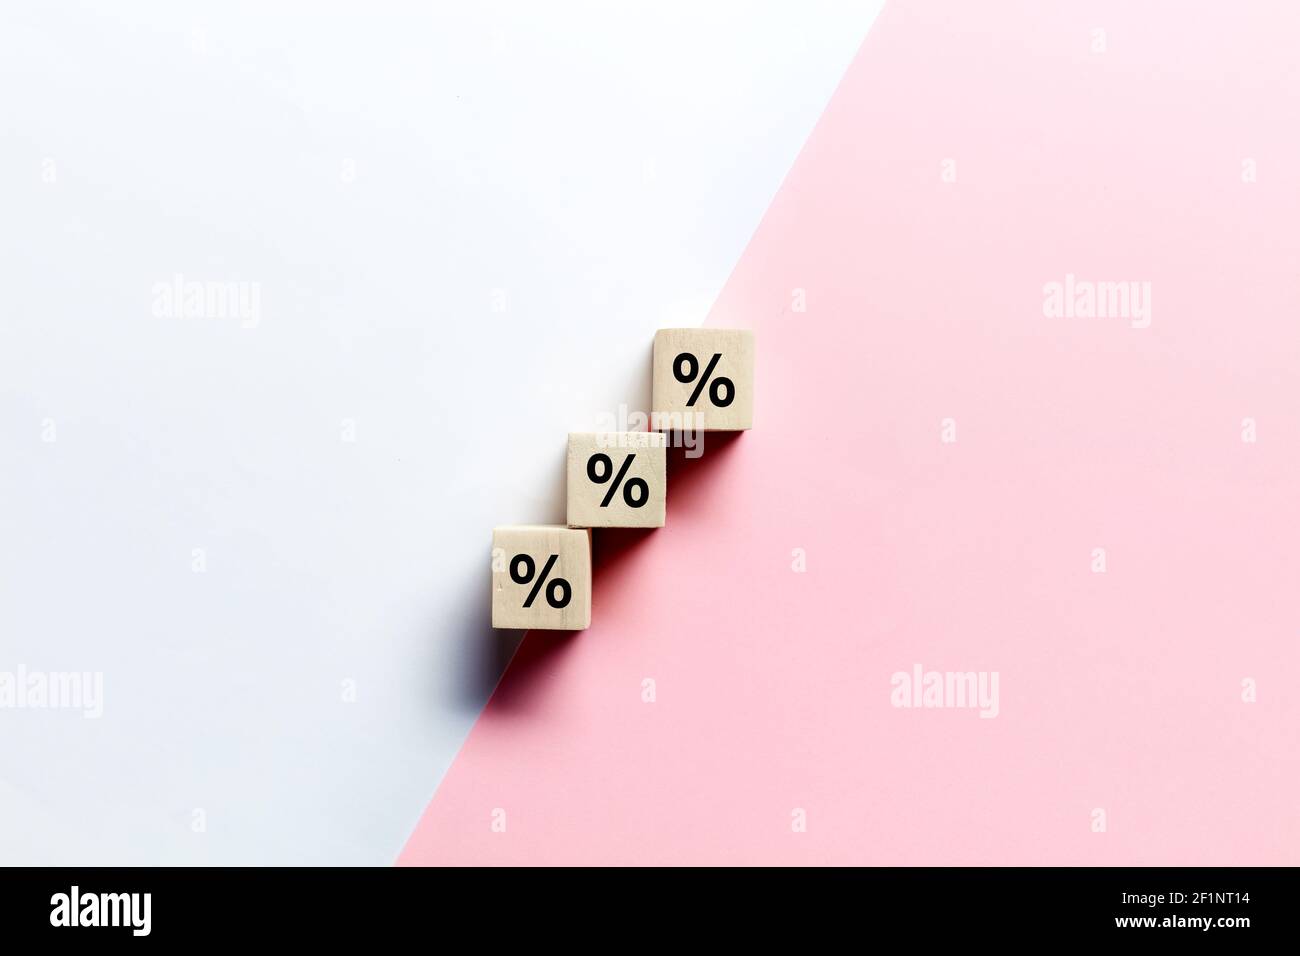 Bloques de madera apilados como escalera de paso con símbolo de porcentaje o porcentaje sobre fondo rosa y blanco. Descuento de ventas o concepto de tasa de interés financiera Foto de stock